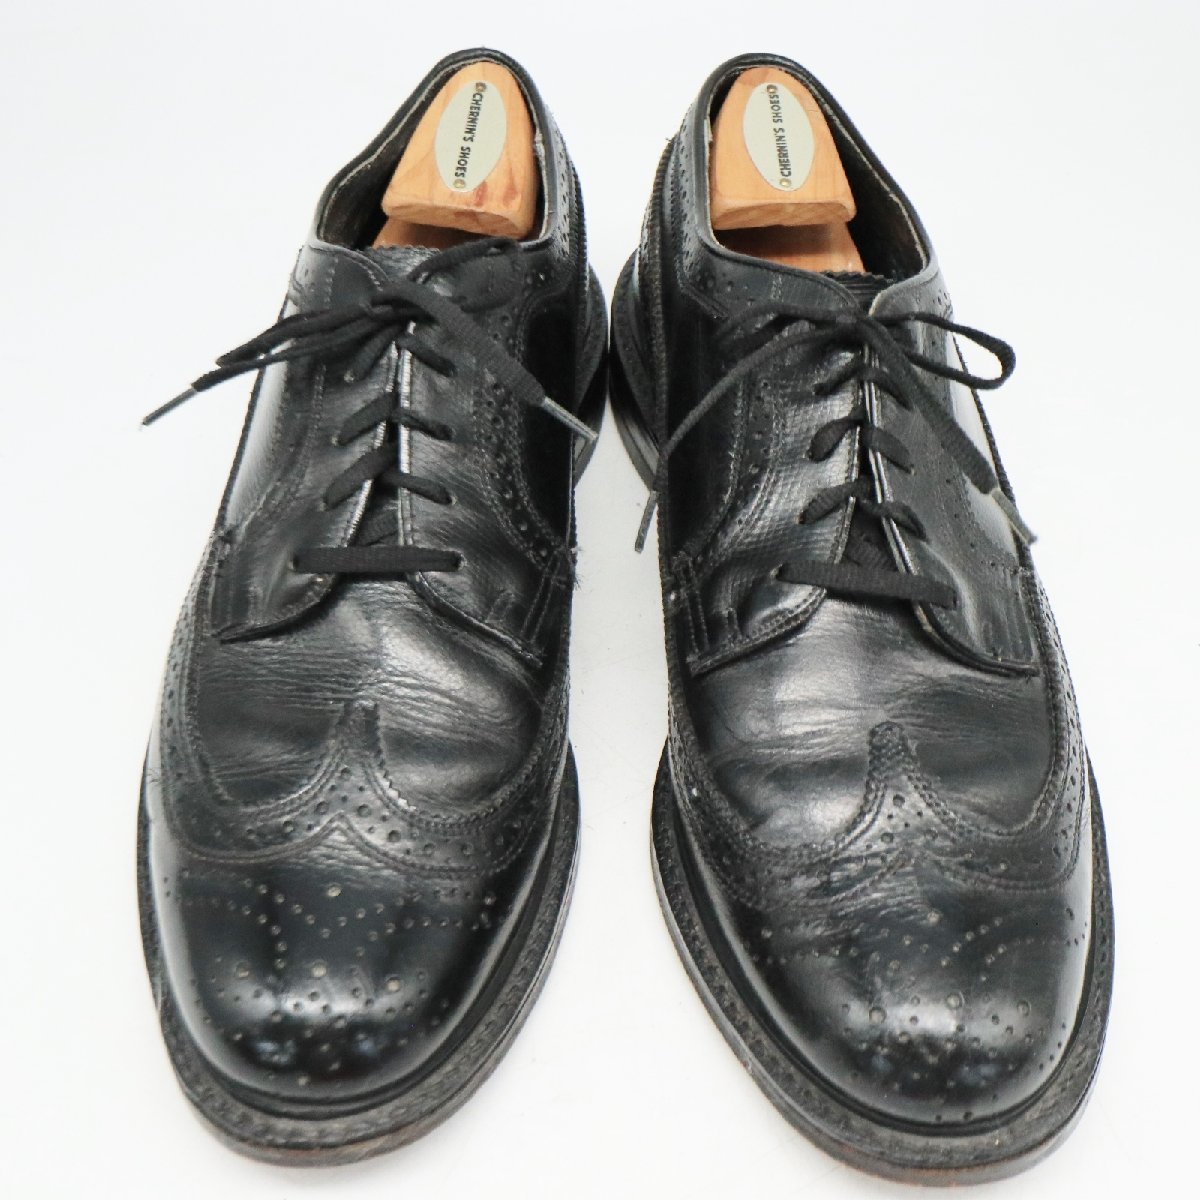 USA製 STAFFORD 外羽根式 ロングウィングチップ 本革 革靴 レザーシューズ ブラック ( メンズ 8.5 ≒ 26.5cm ) 中古 古着 KA0184